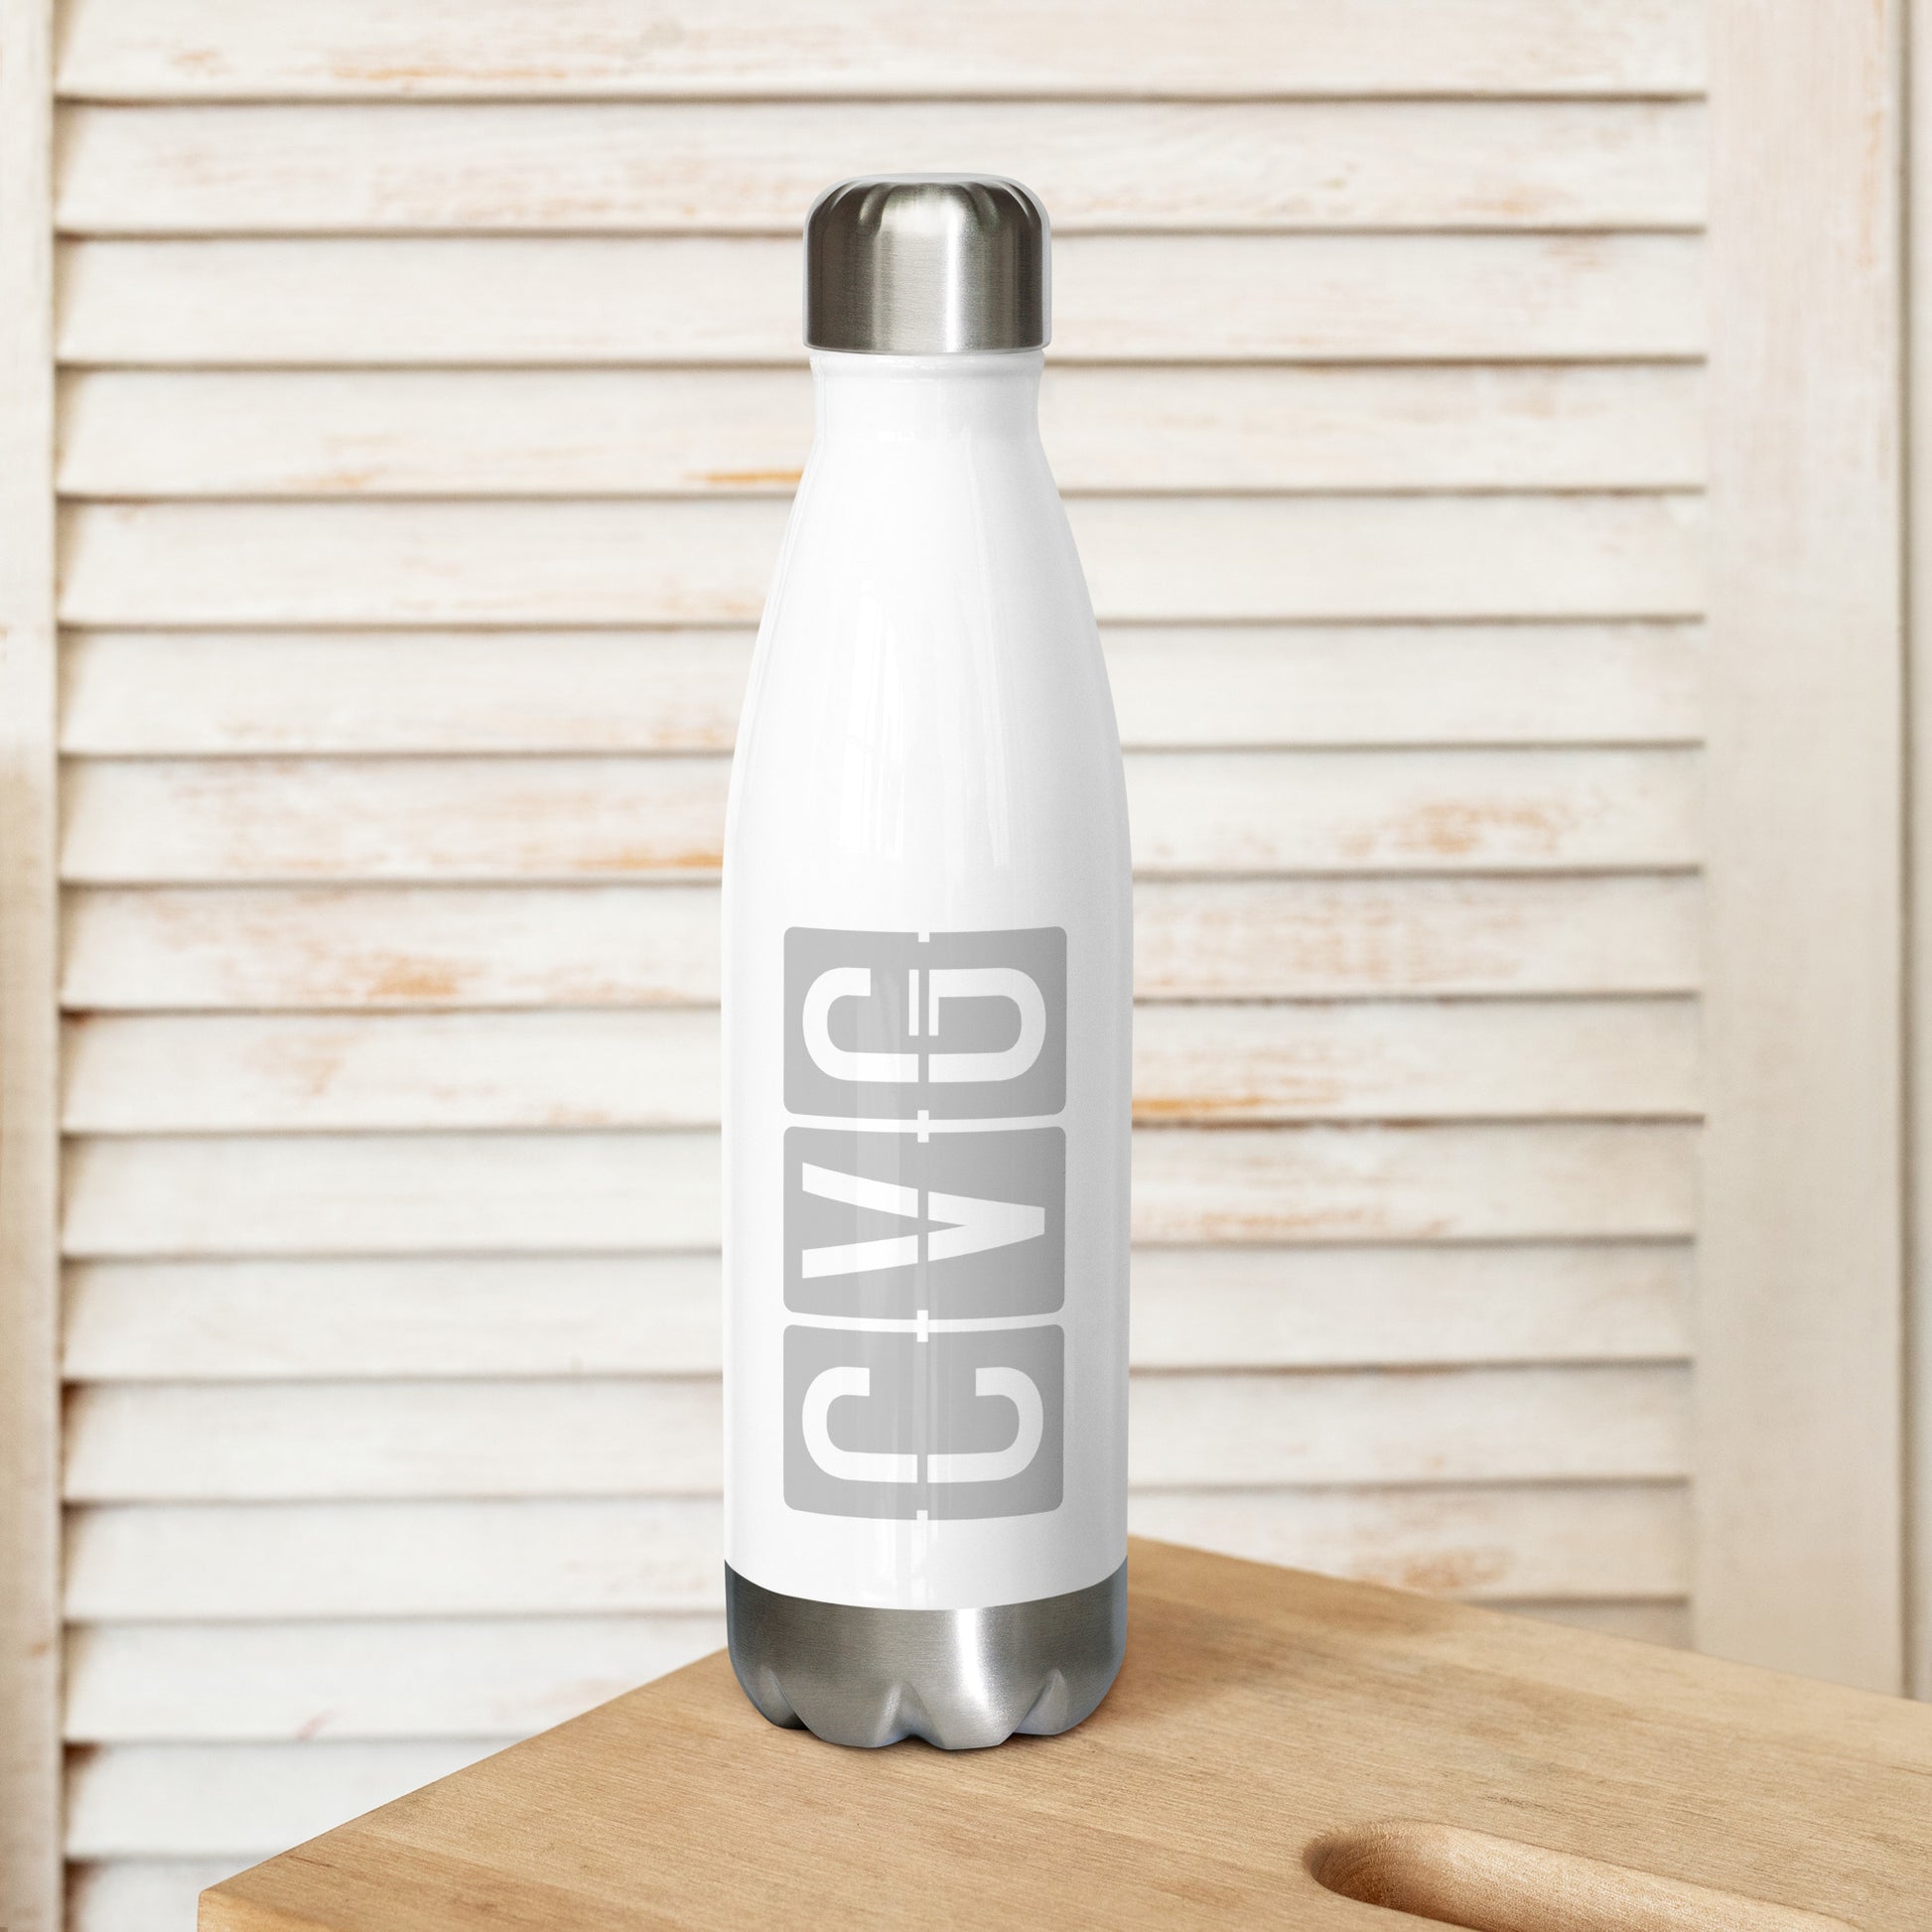 Split-Flap Water Bottle - Grey • CVG Cincinnati • YHM Designs - Image 02